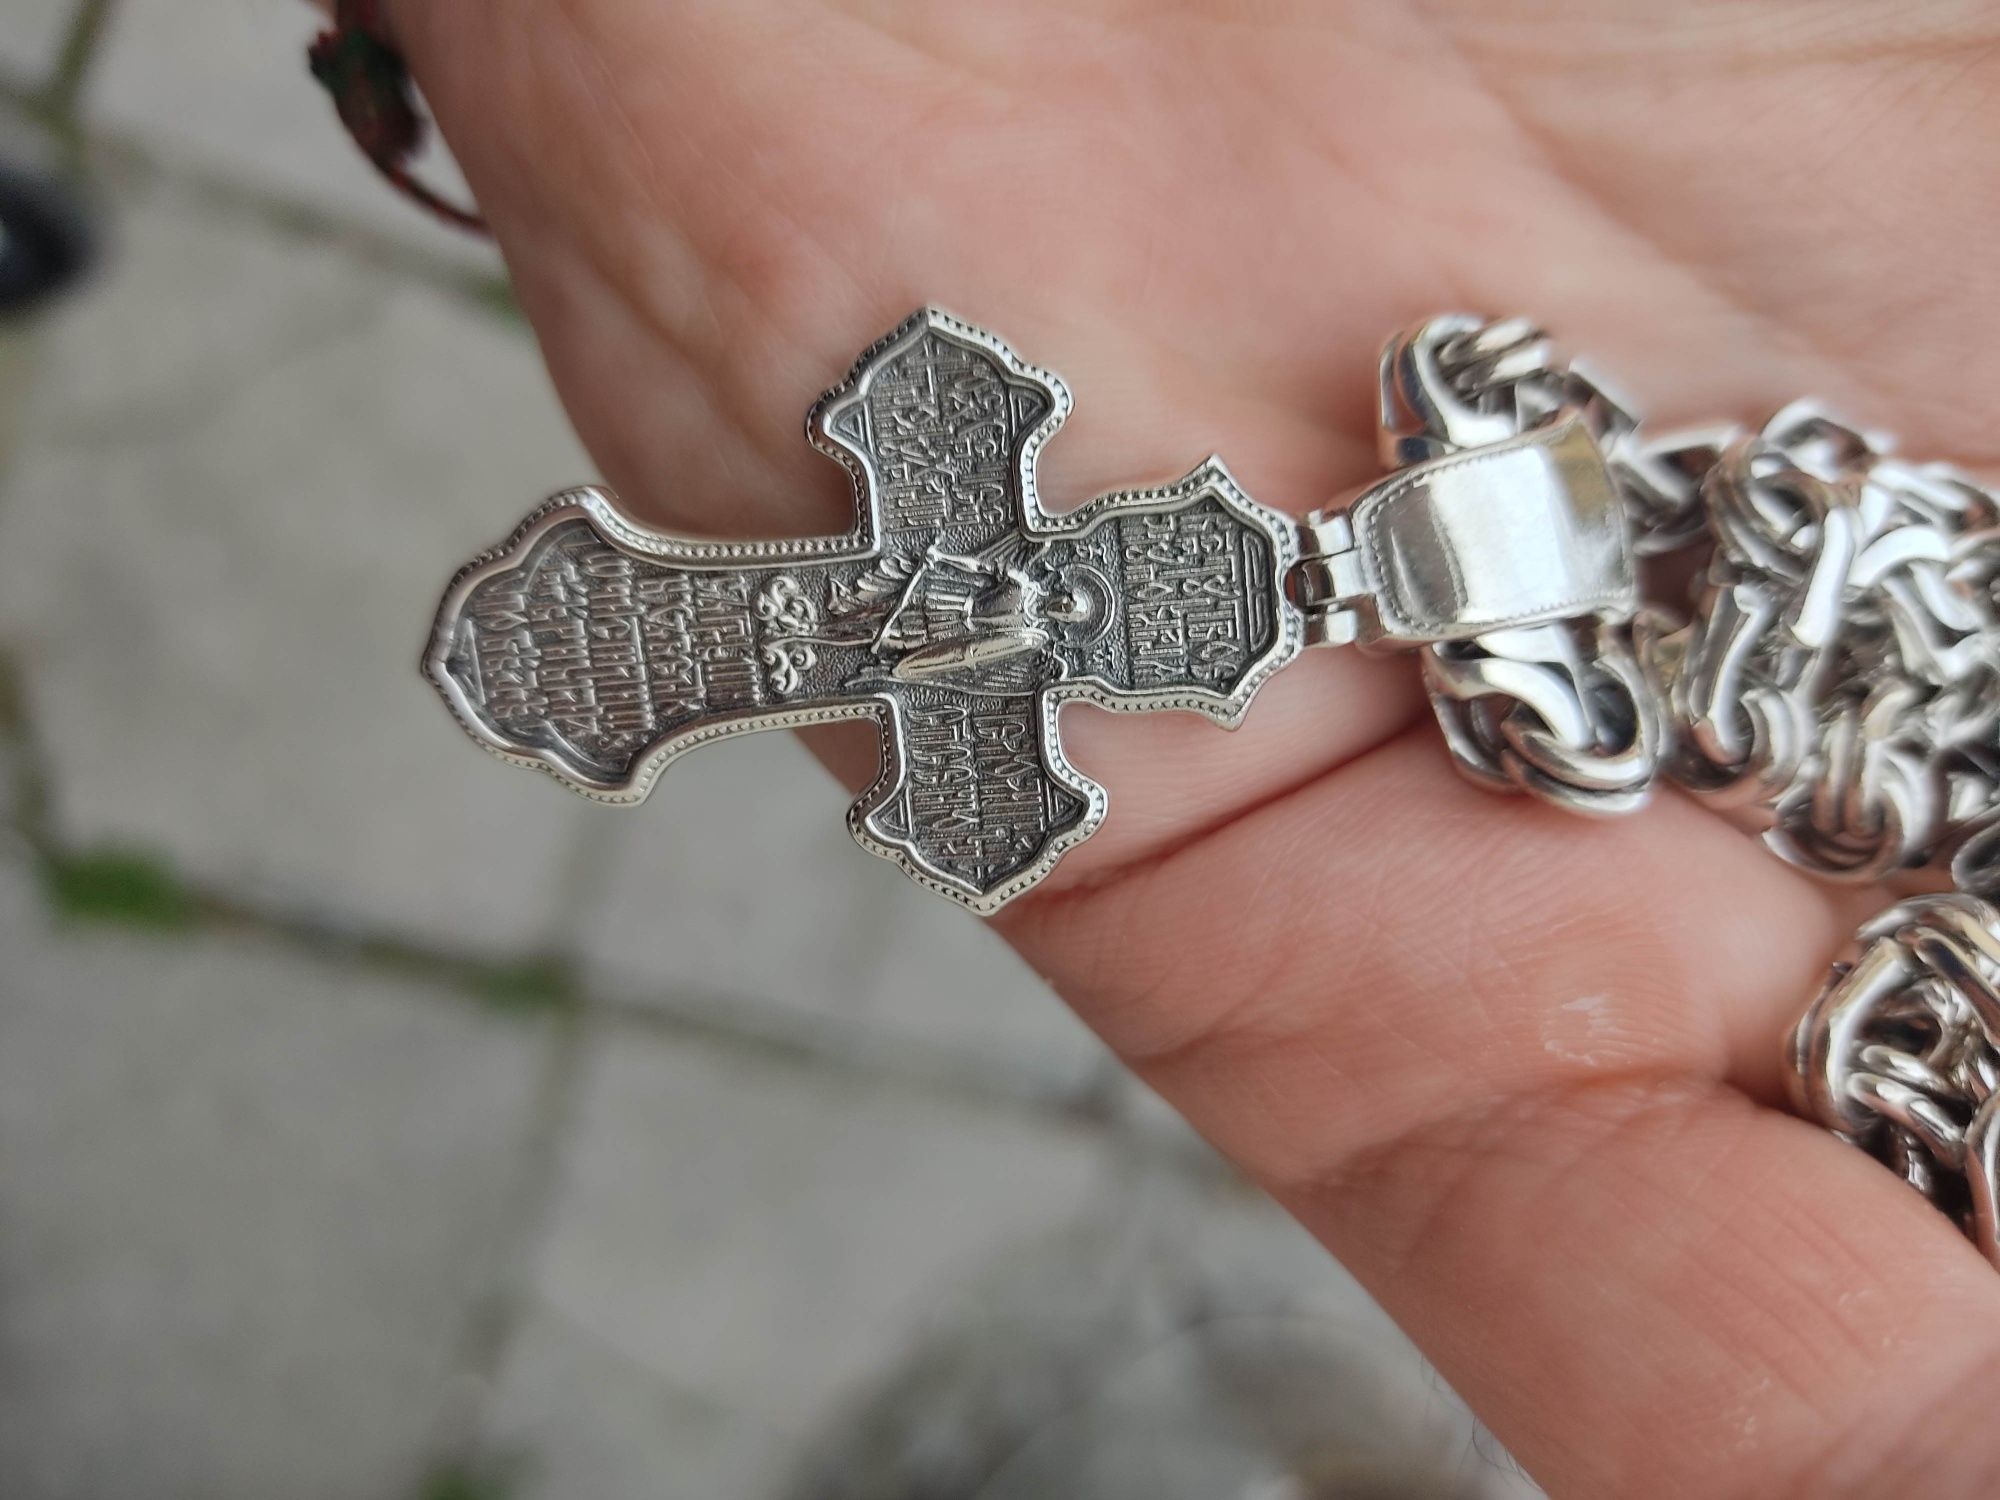 Продам серебрянною цепочку с крестом 925  пробы.